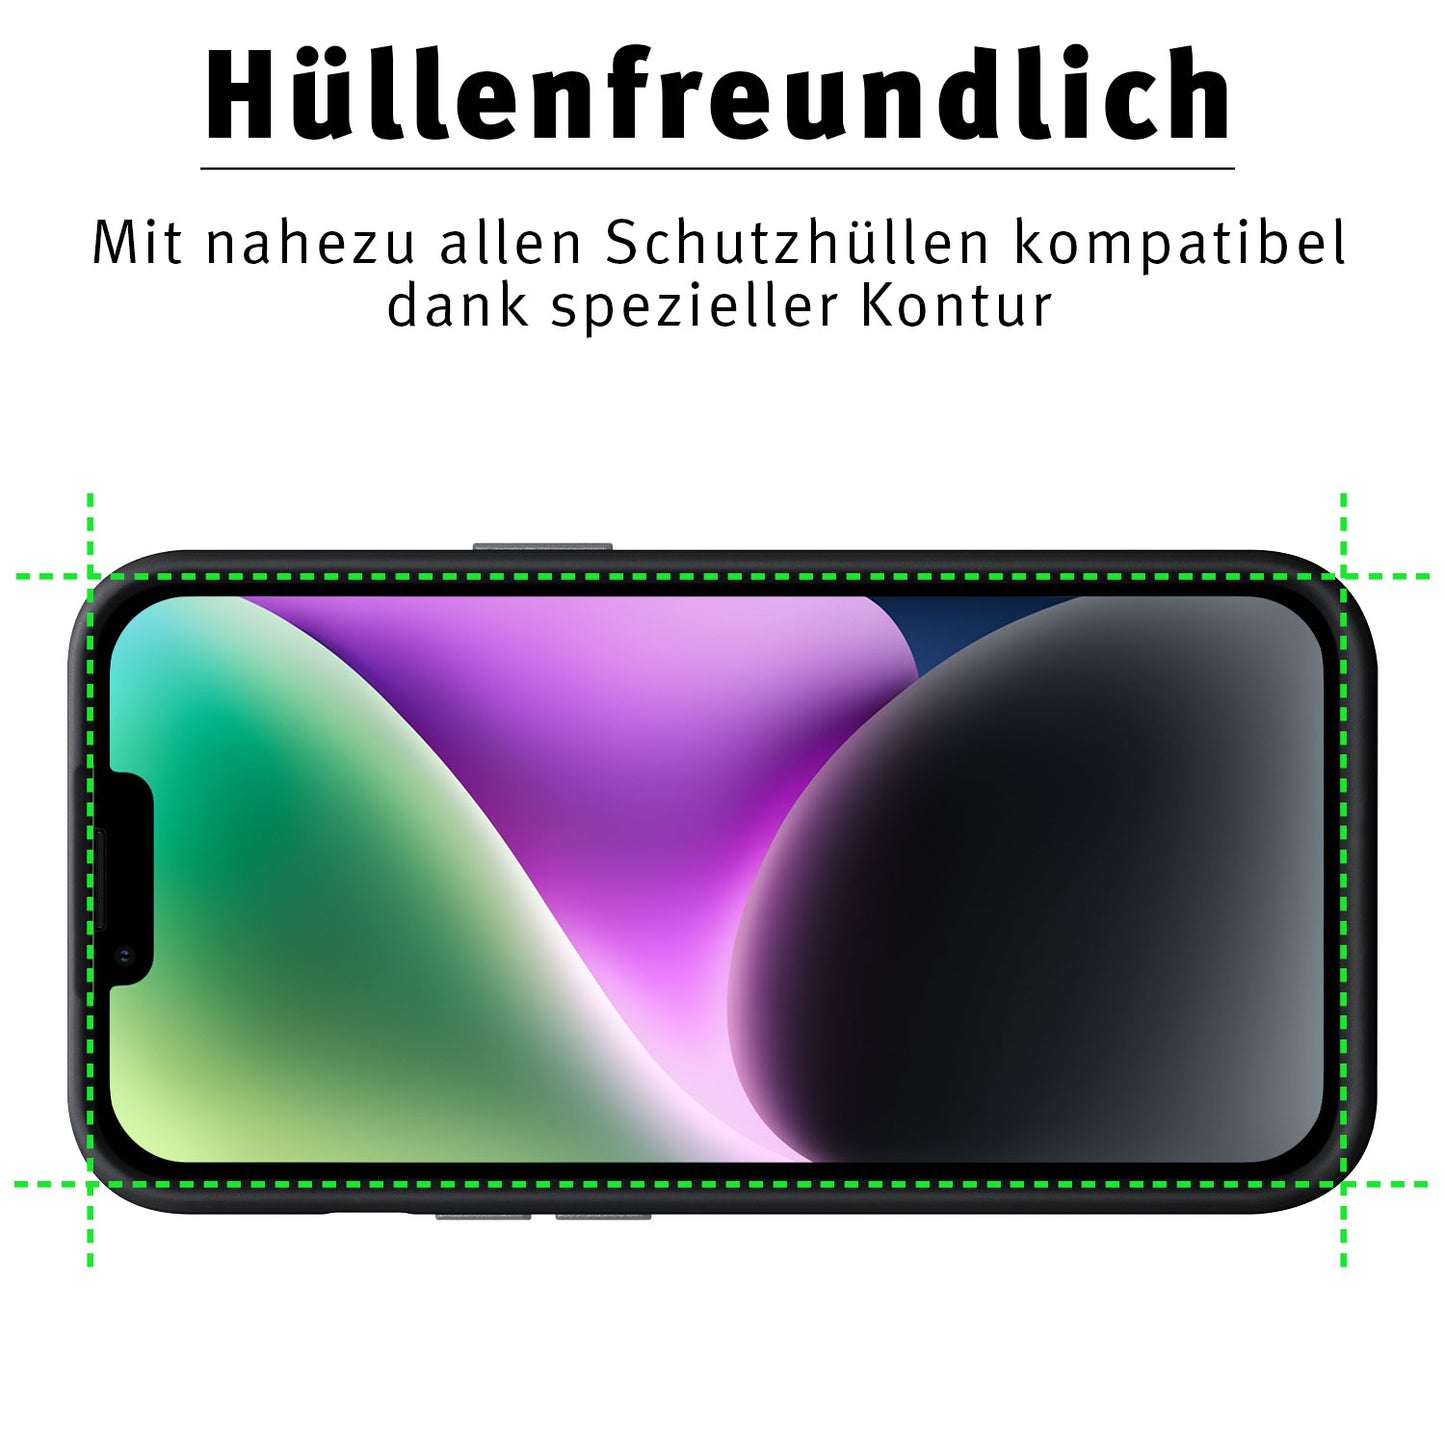 ArktisPRO iPhone 14 FULL COVER Displayschutz GLAS - hüllenfreundlich - 2er Set